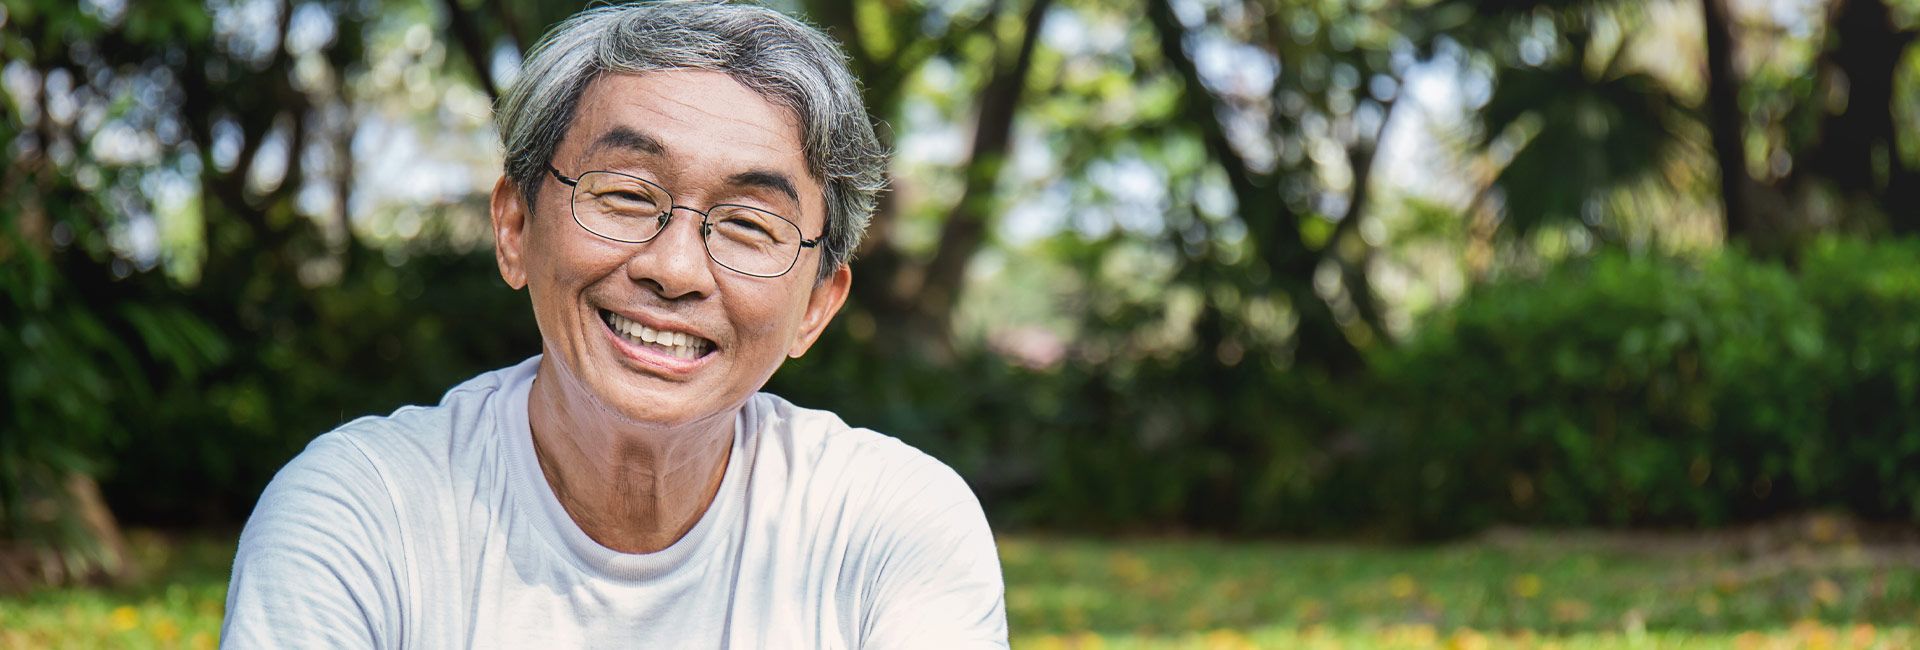 Smiling older Asian man